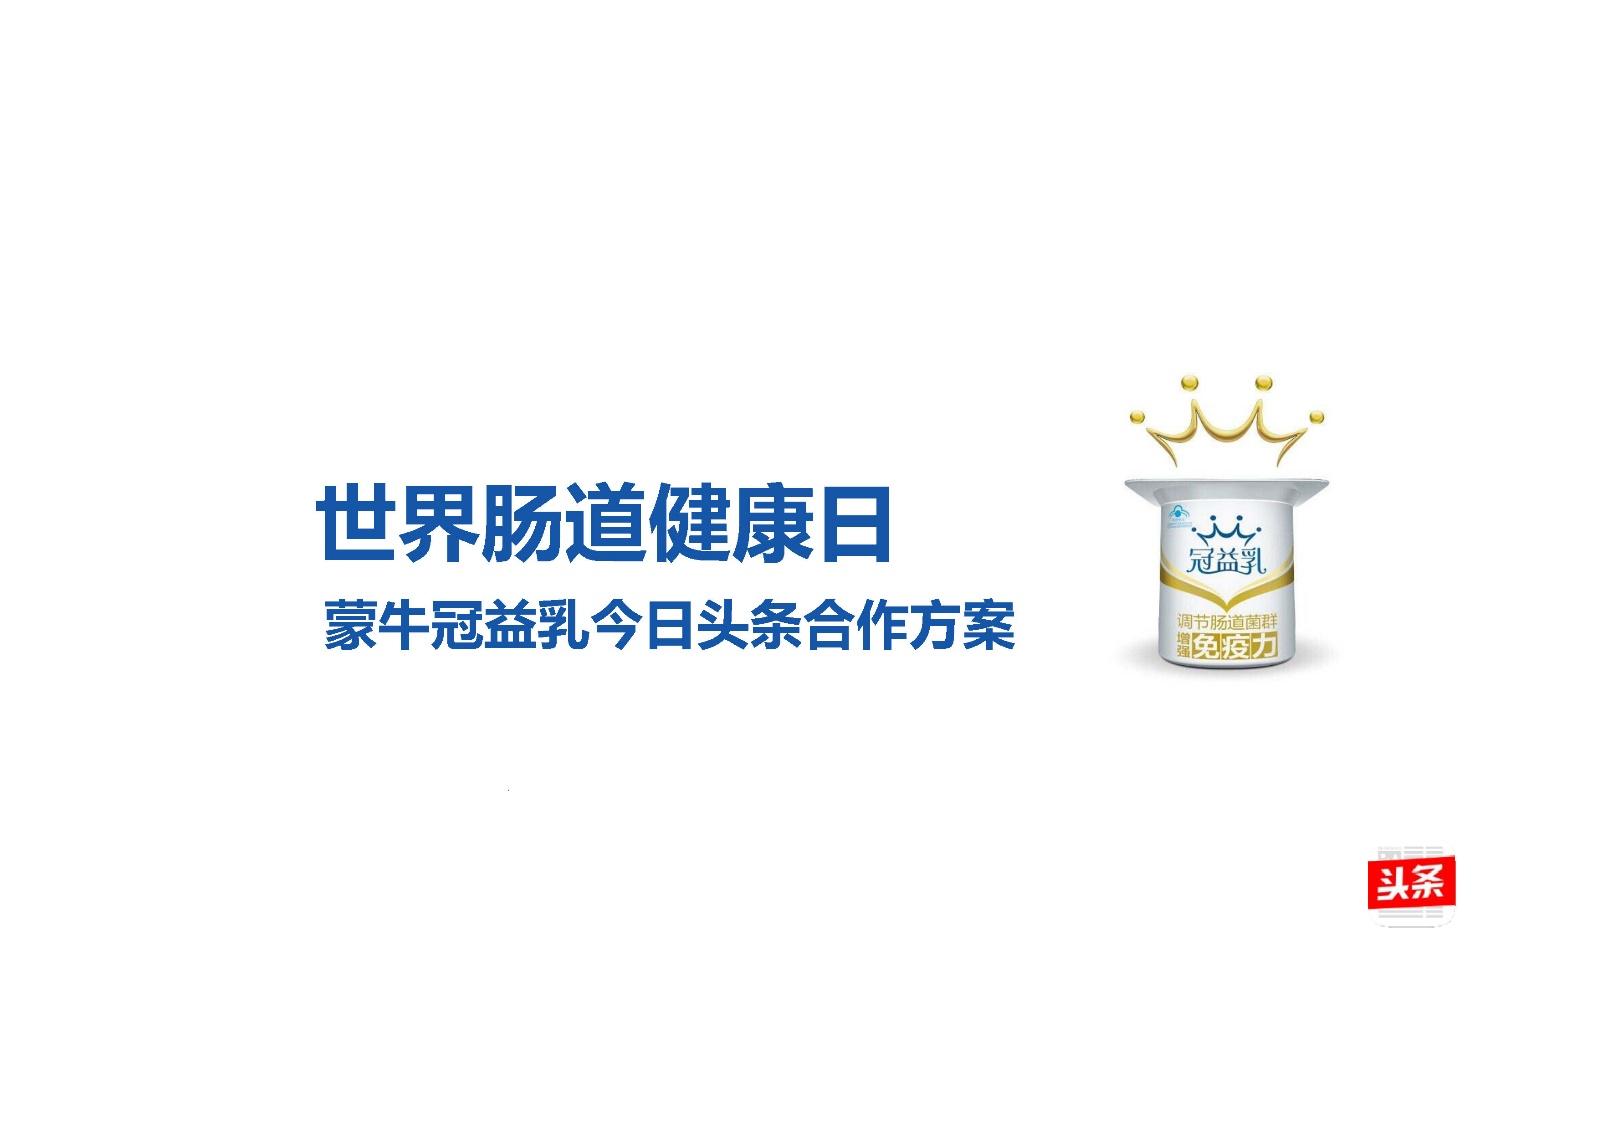 冠益乳黄桃燕麦味酸奶-蒙牛-FoodTalks食品产品库